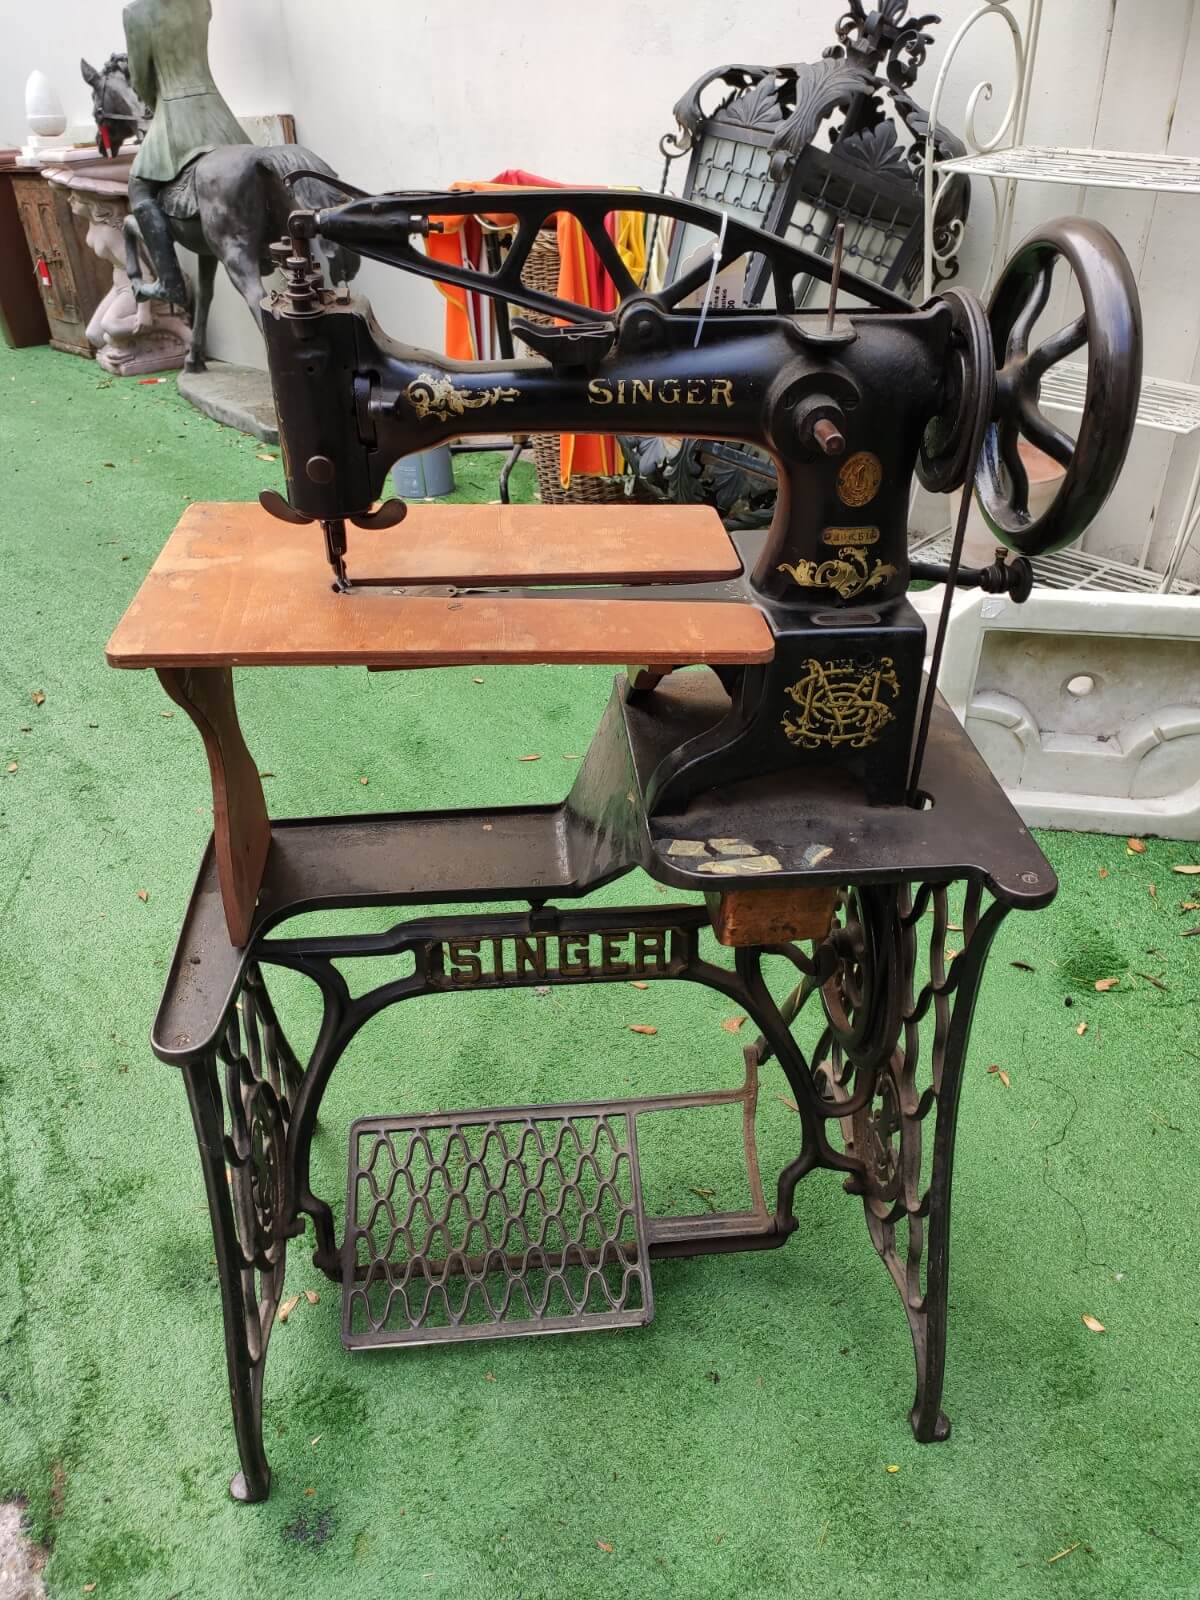 vecchia macchina da cucire da calzolaio Singer completa 